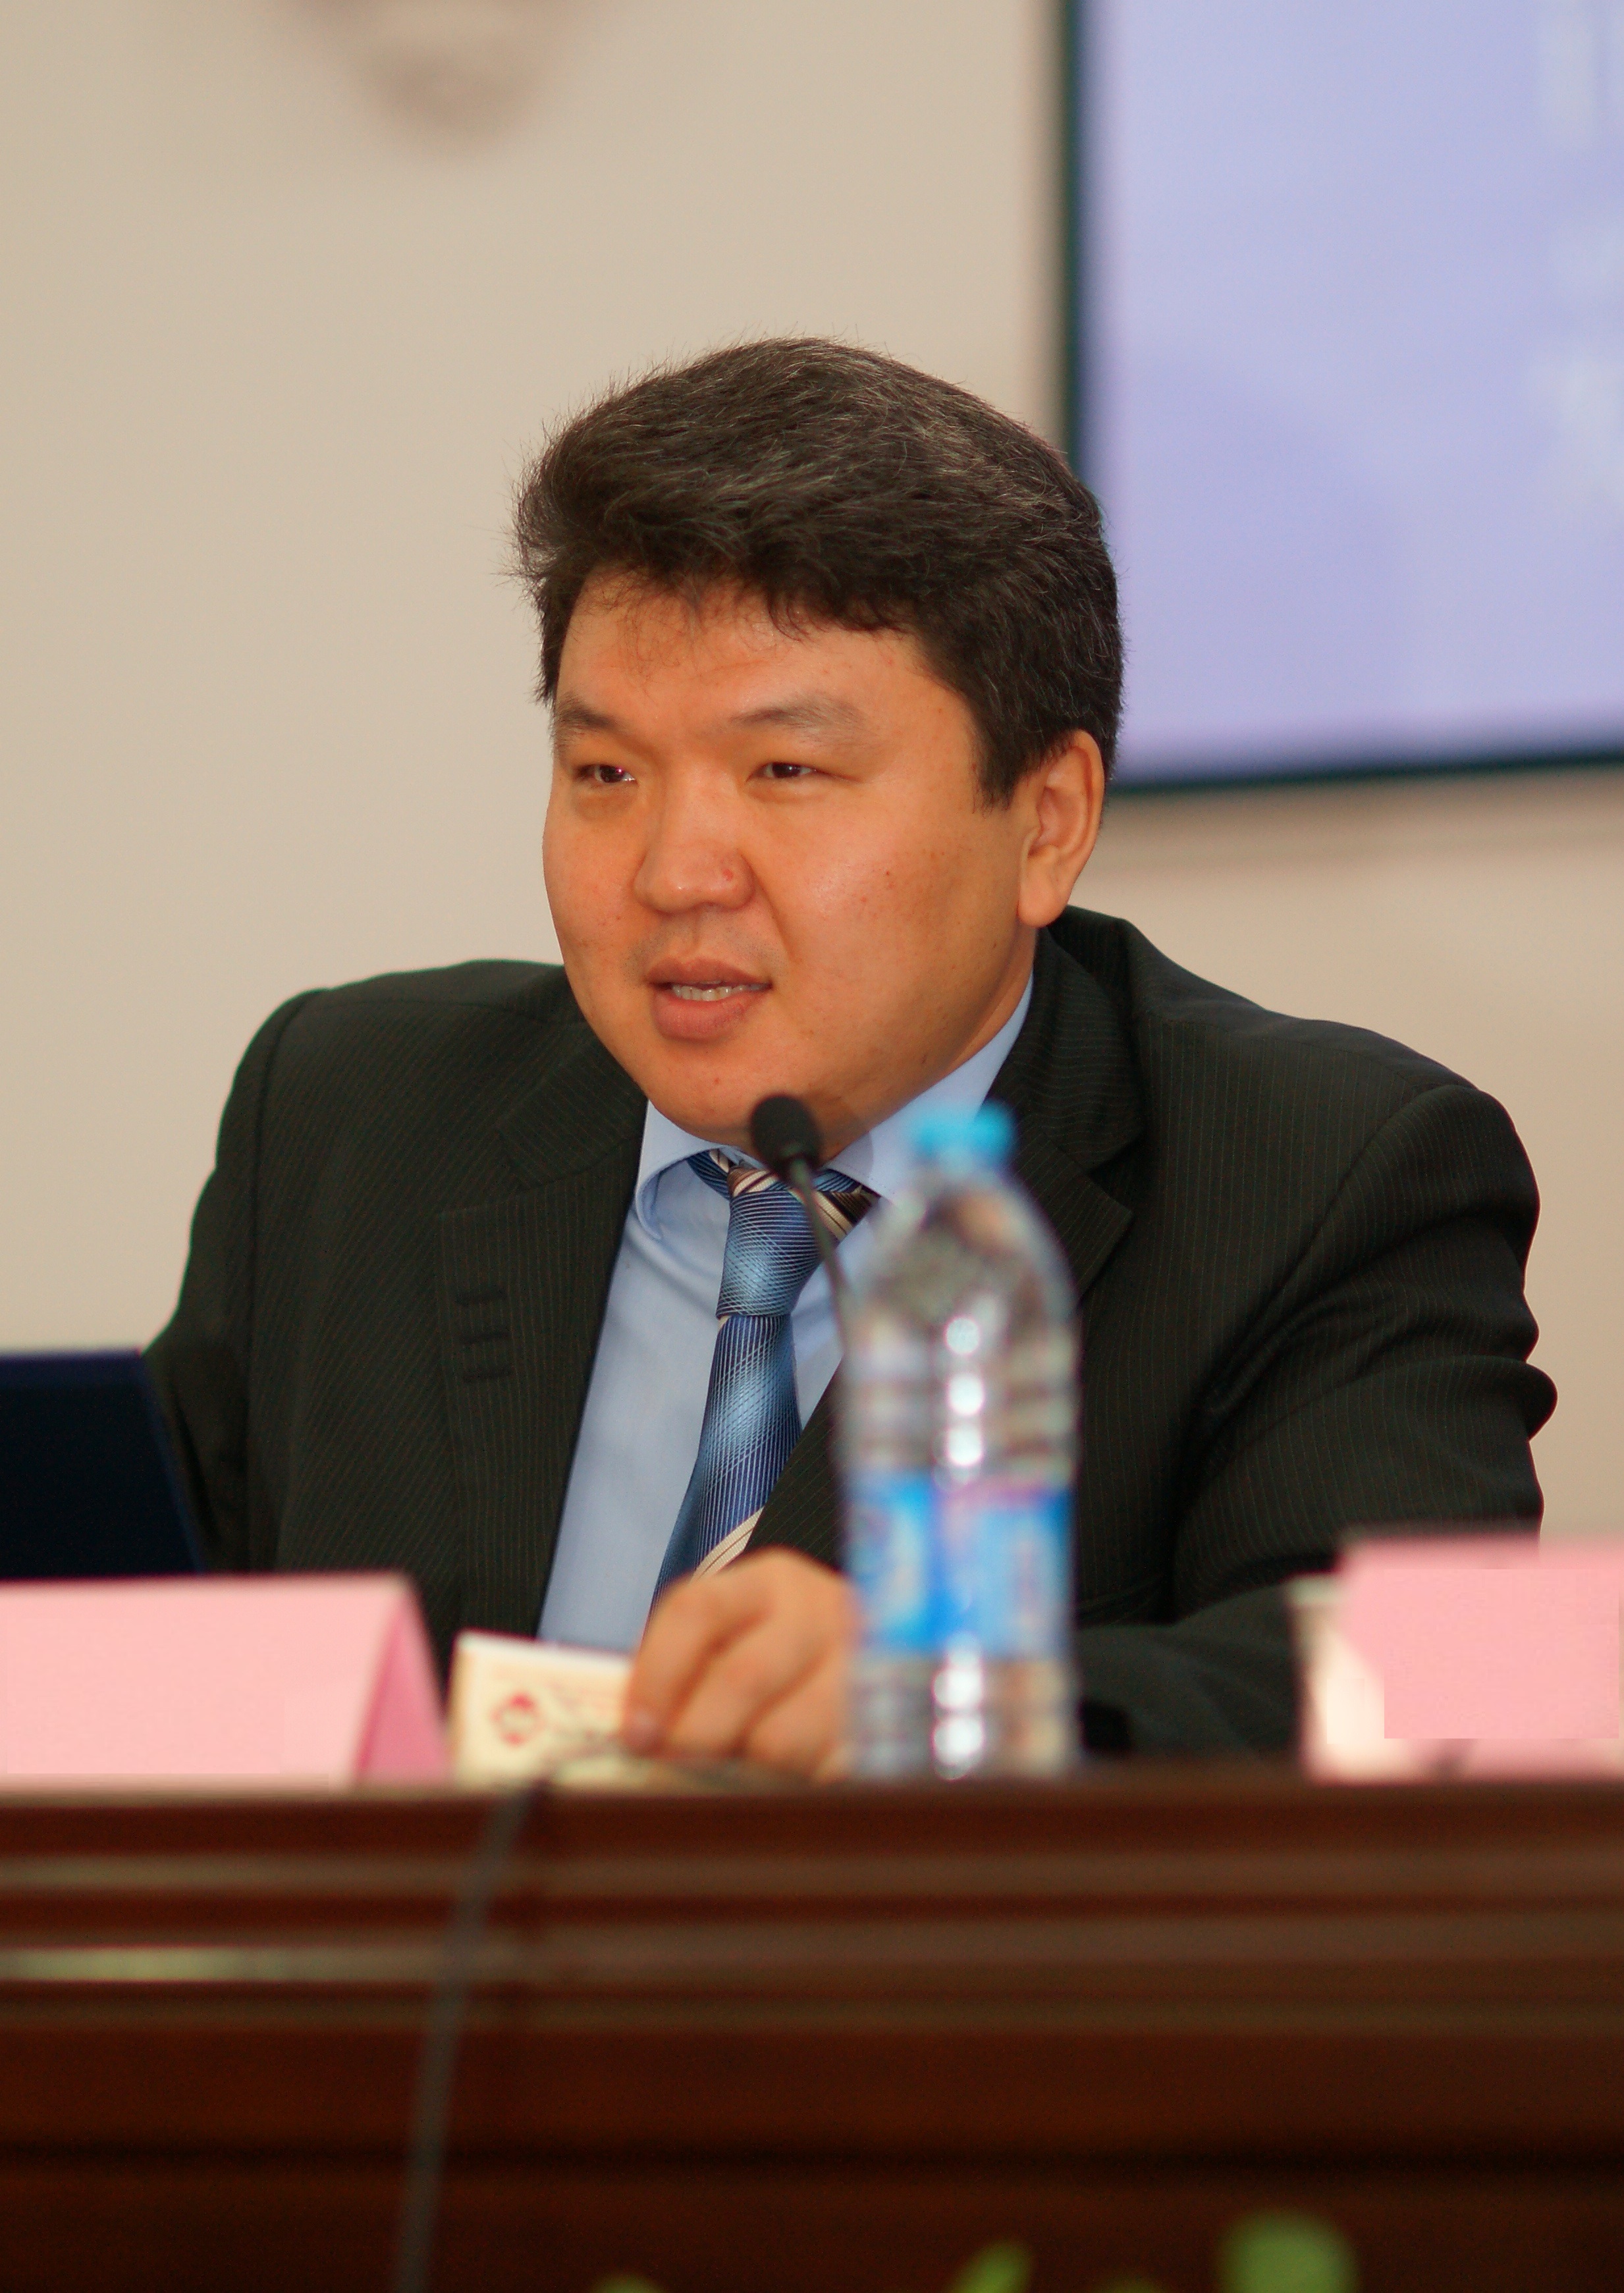                         Garmaev Yury
            